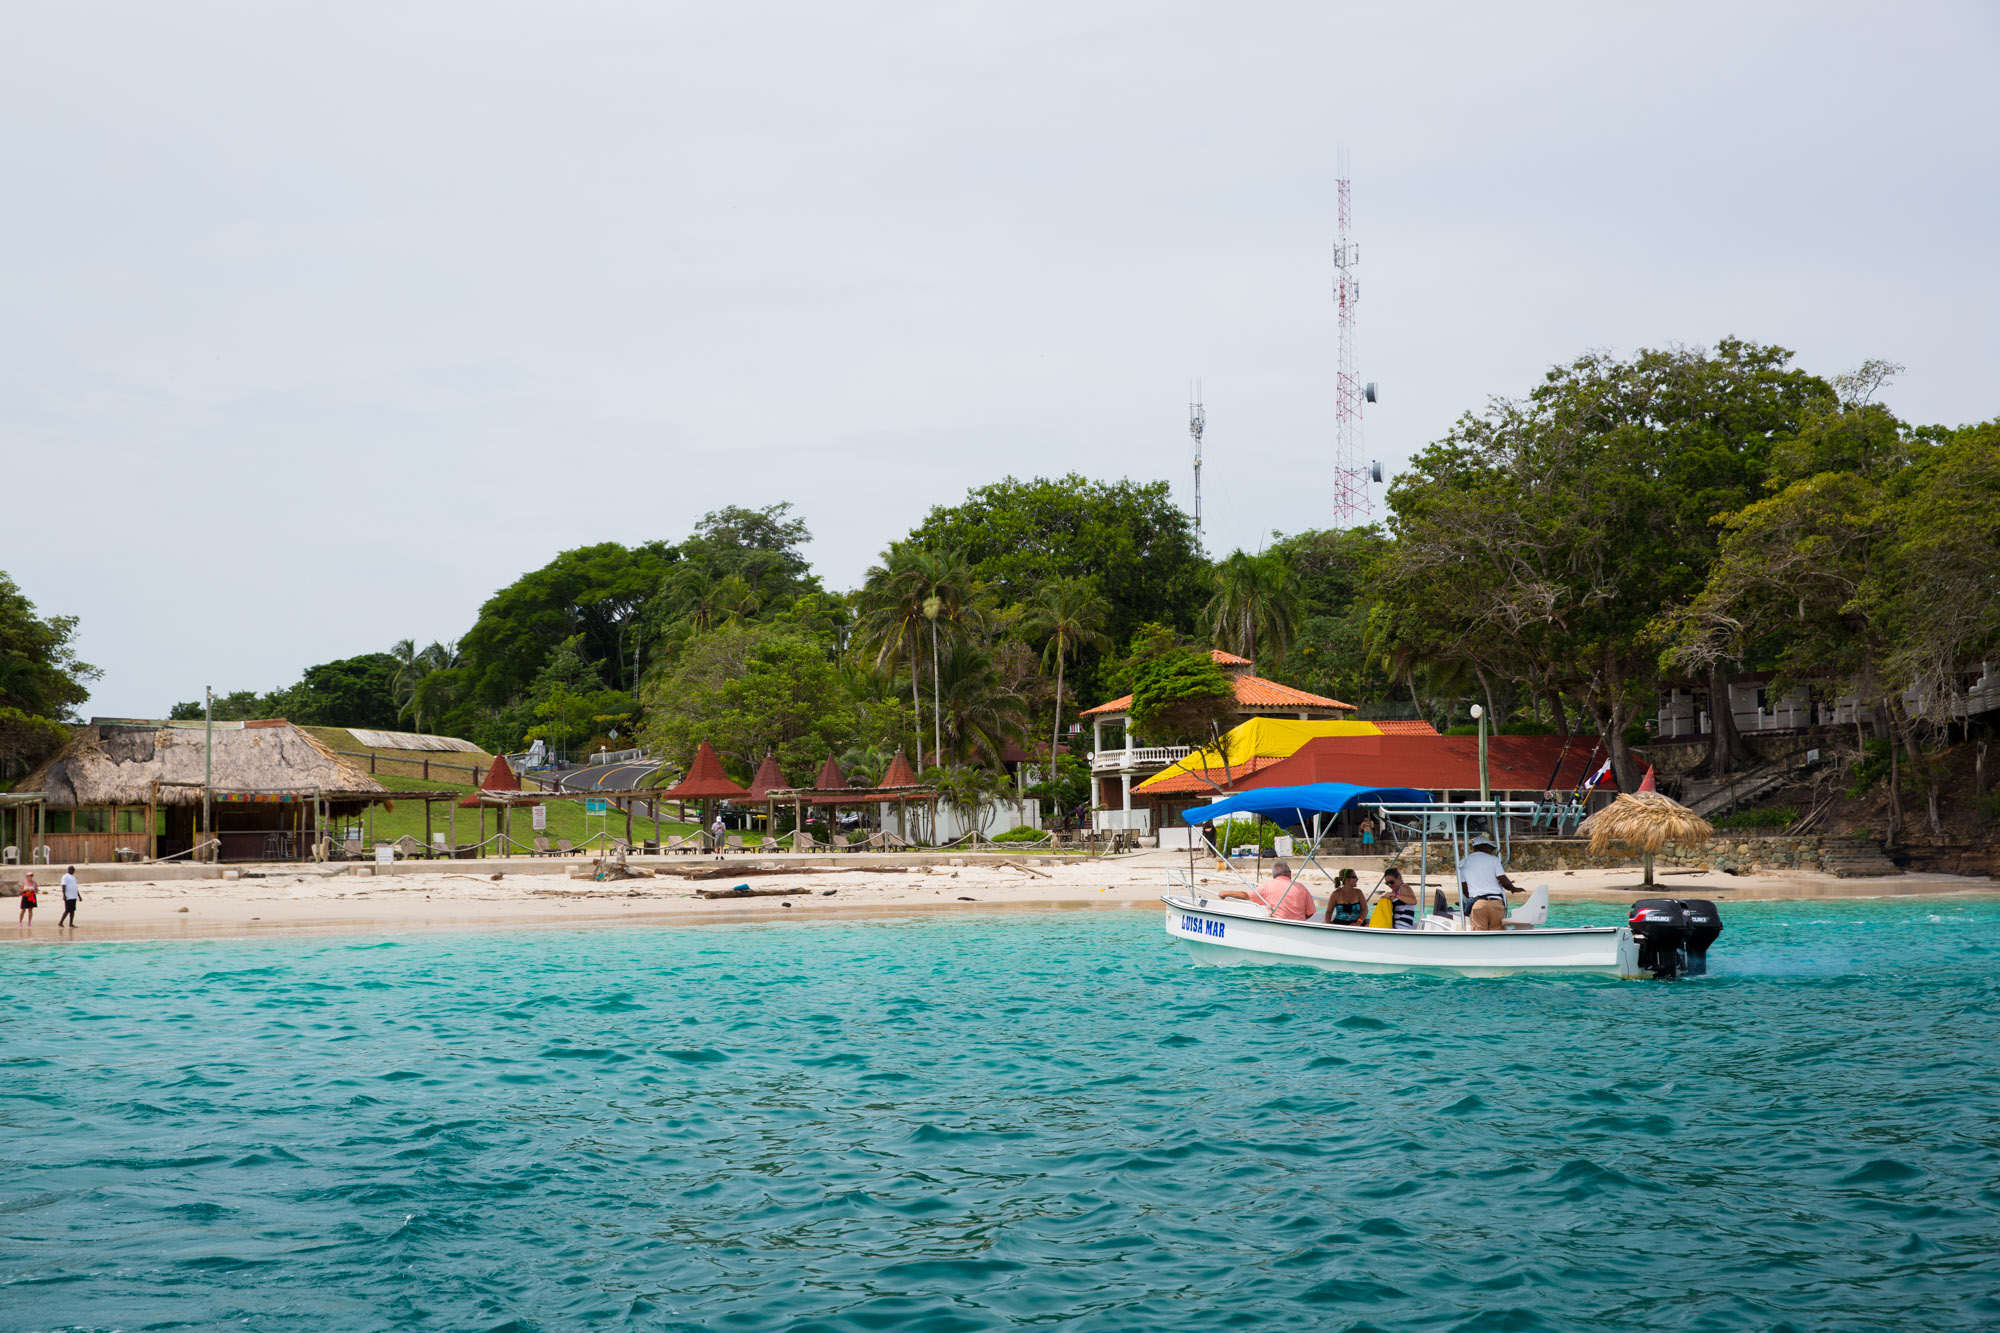 Playa Galeón en isla Contadora vista desde el mar, archipiélago de Las Perlas, Panamá